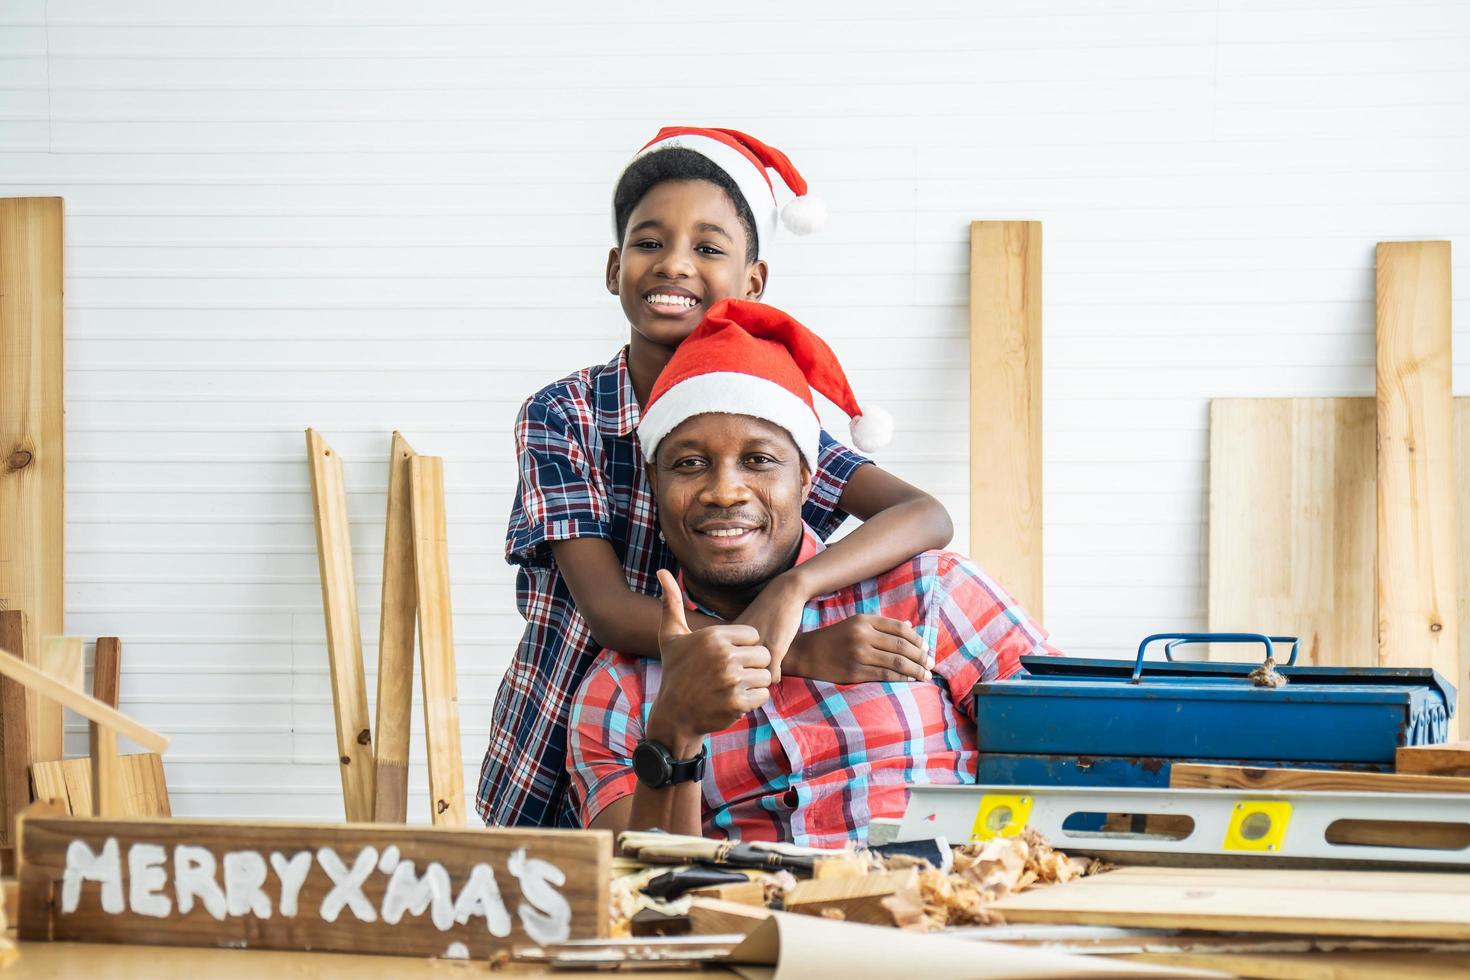 navidad feliz niño y padre. alegre hijo afroamericano carpintero abrazando a su padre mientras se apoya en la mesa de madera con diversas herramientas de trabajo sobre ella foto